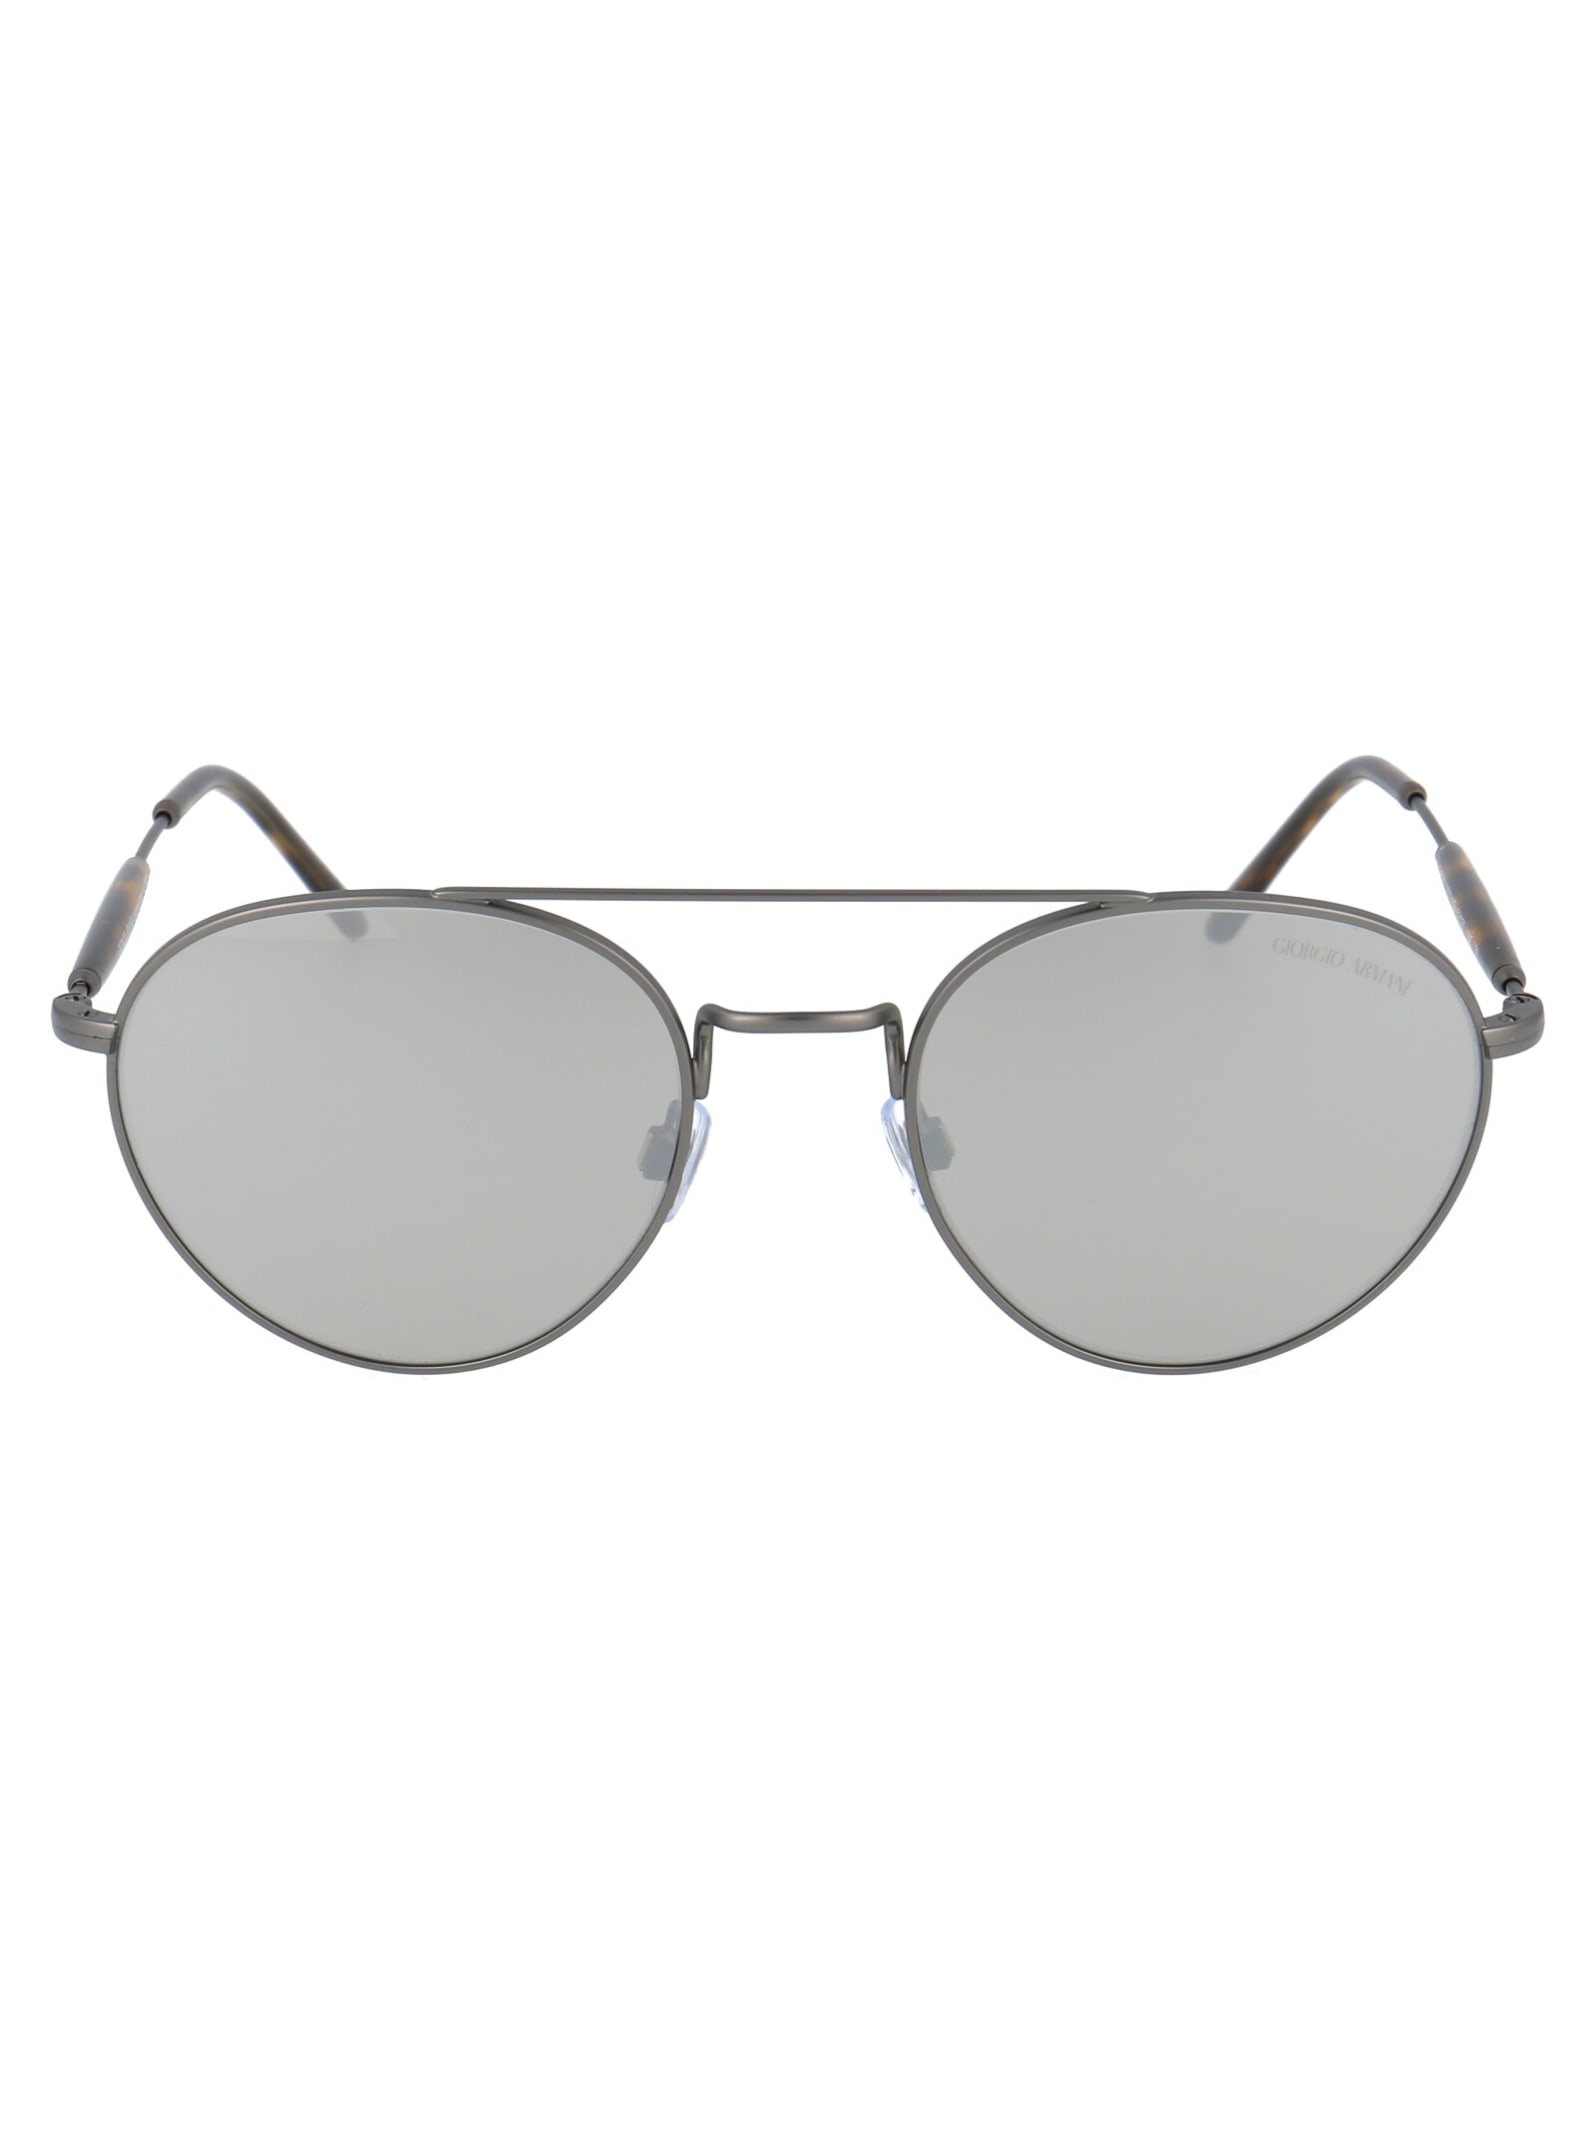 Giorgio Armani 0ar6075 Sunglasses